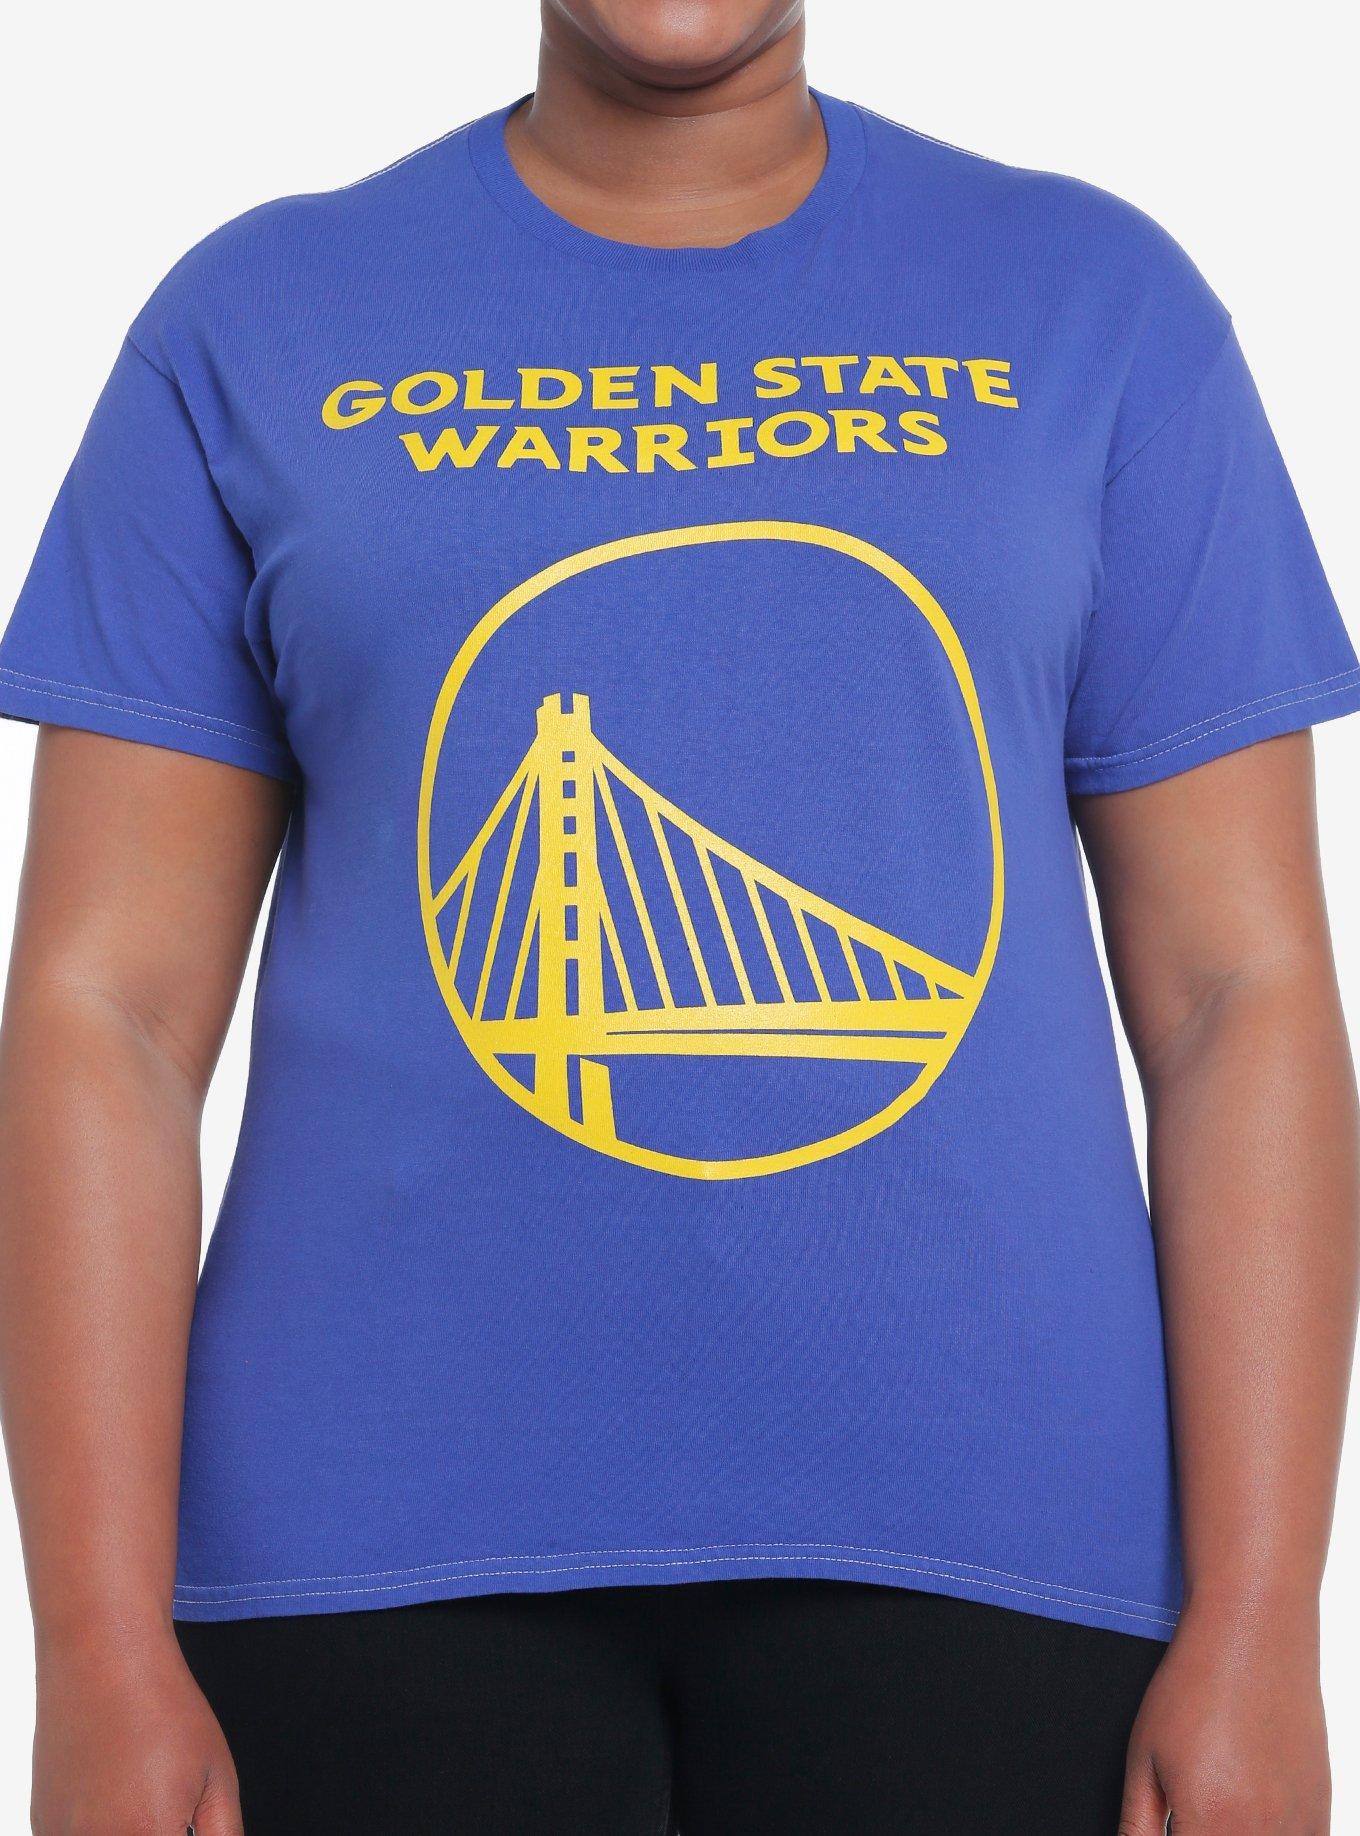  Golden State Warriors T-shirt